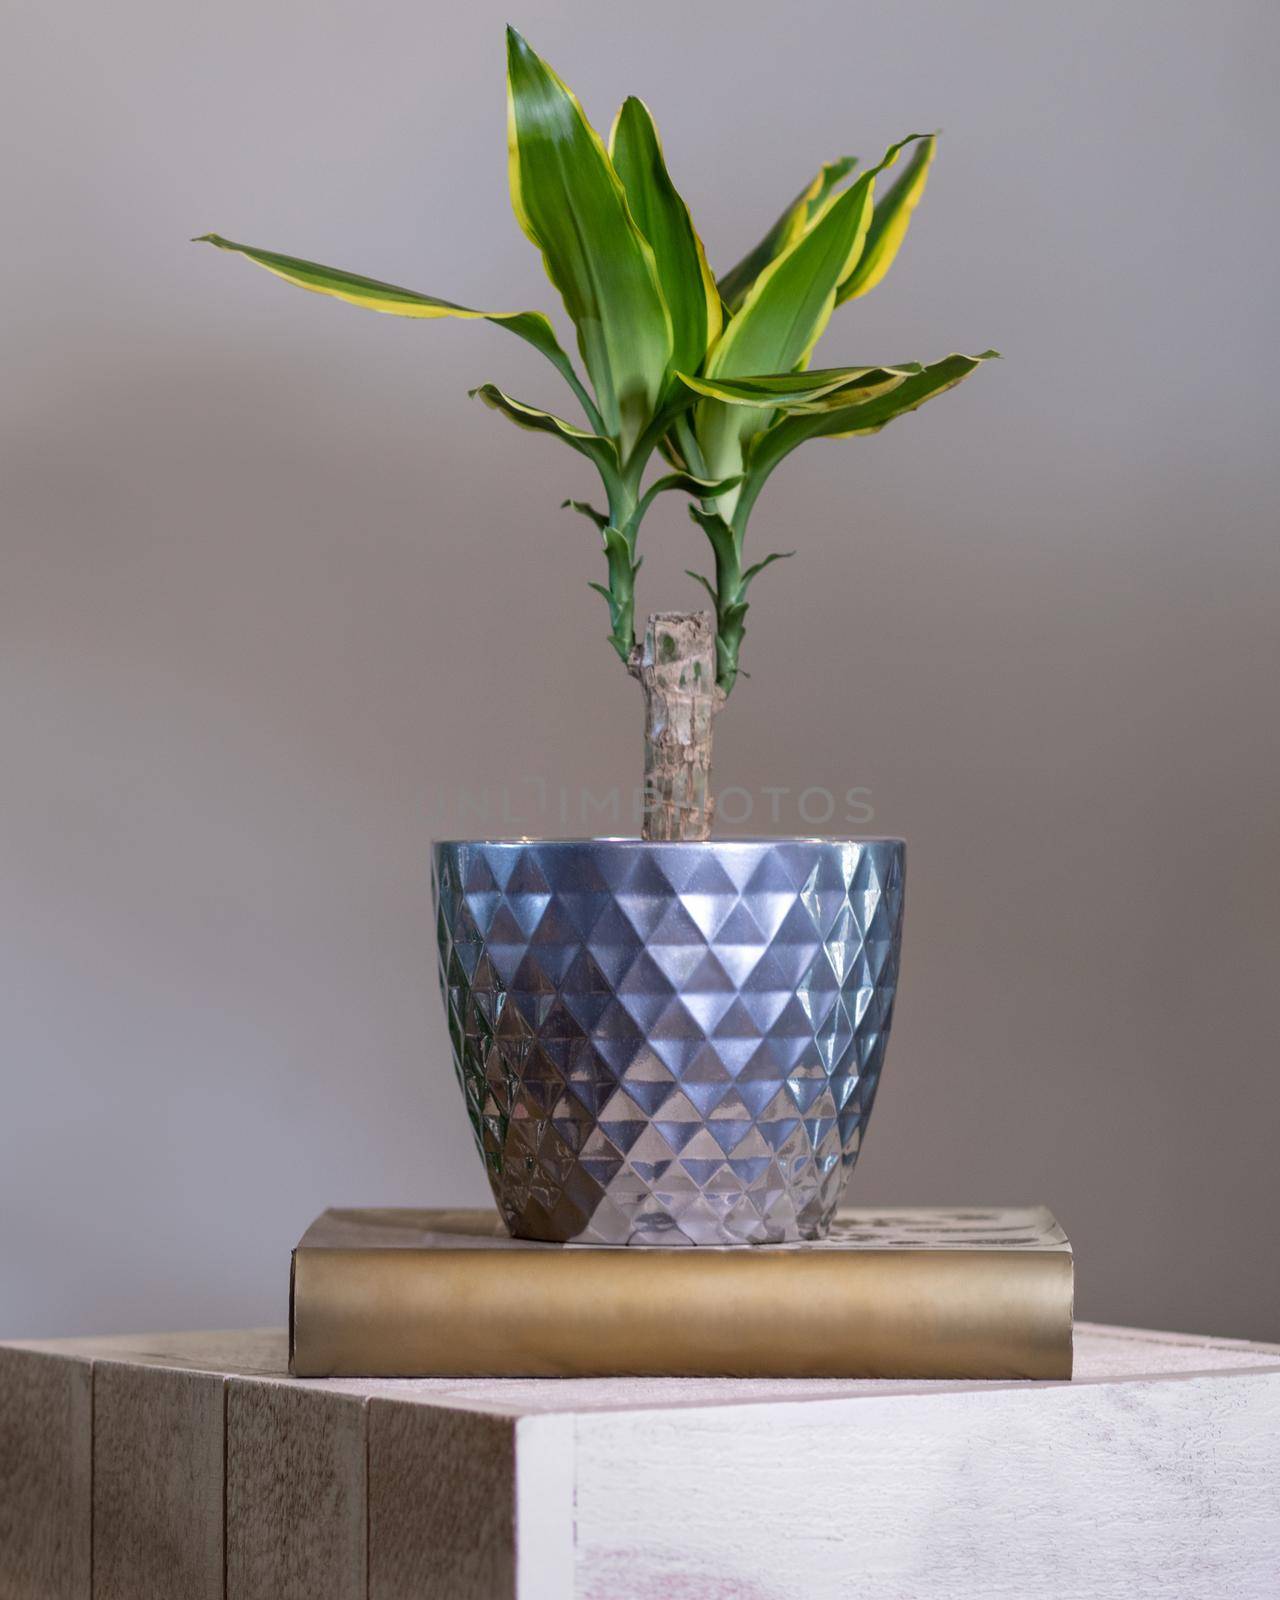 Dracaena fragrans plant in silver pot